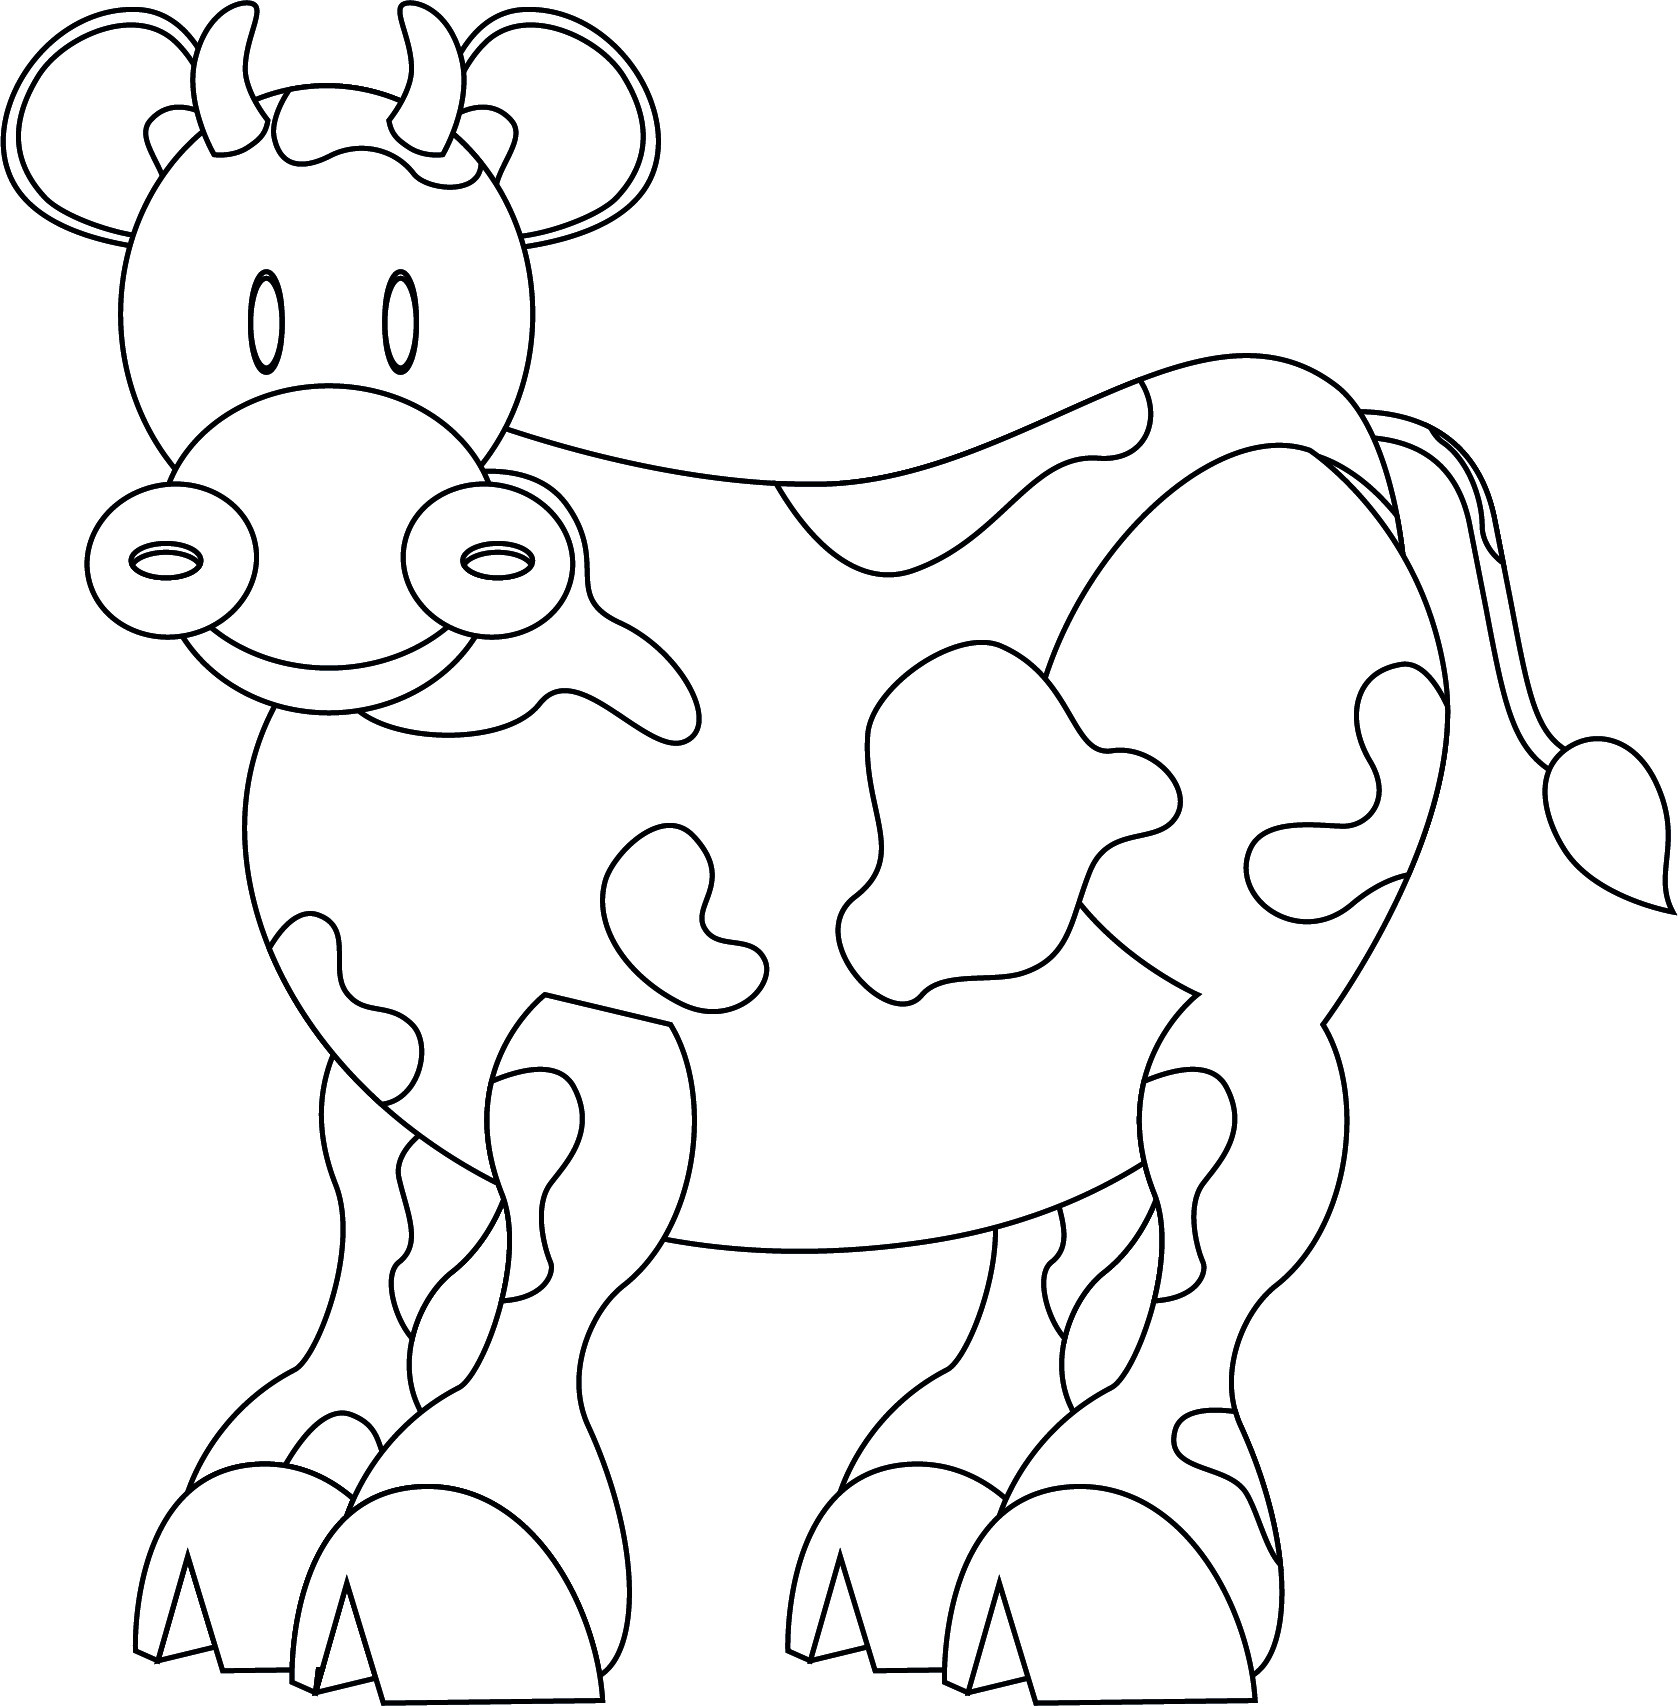 Раскраска для детей: сказочная корова с большими копытами